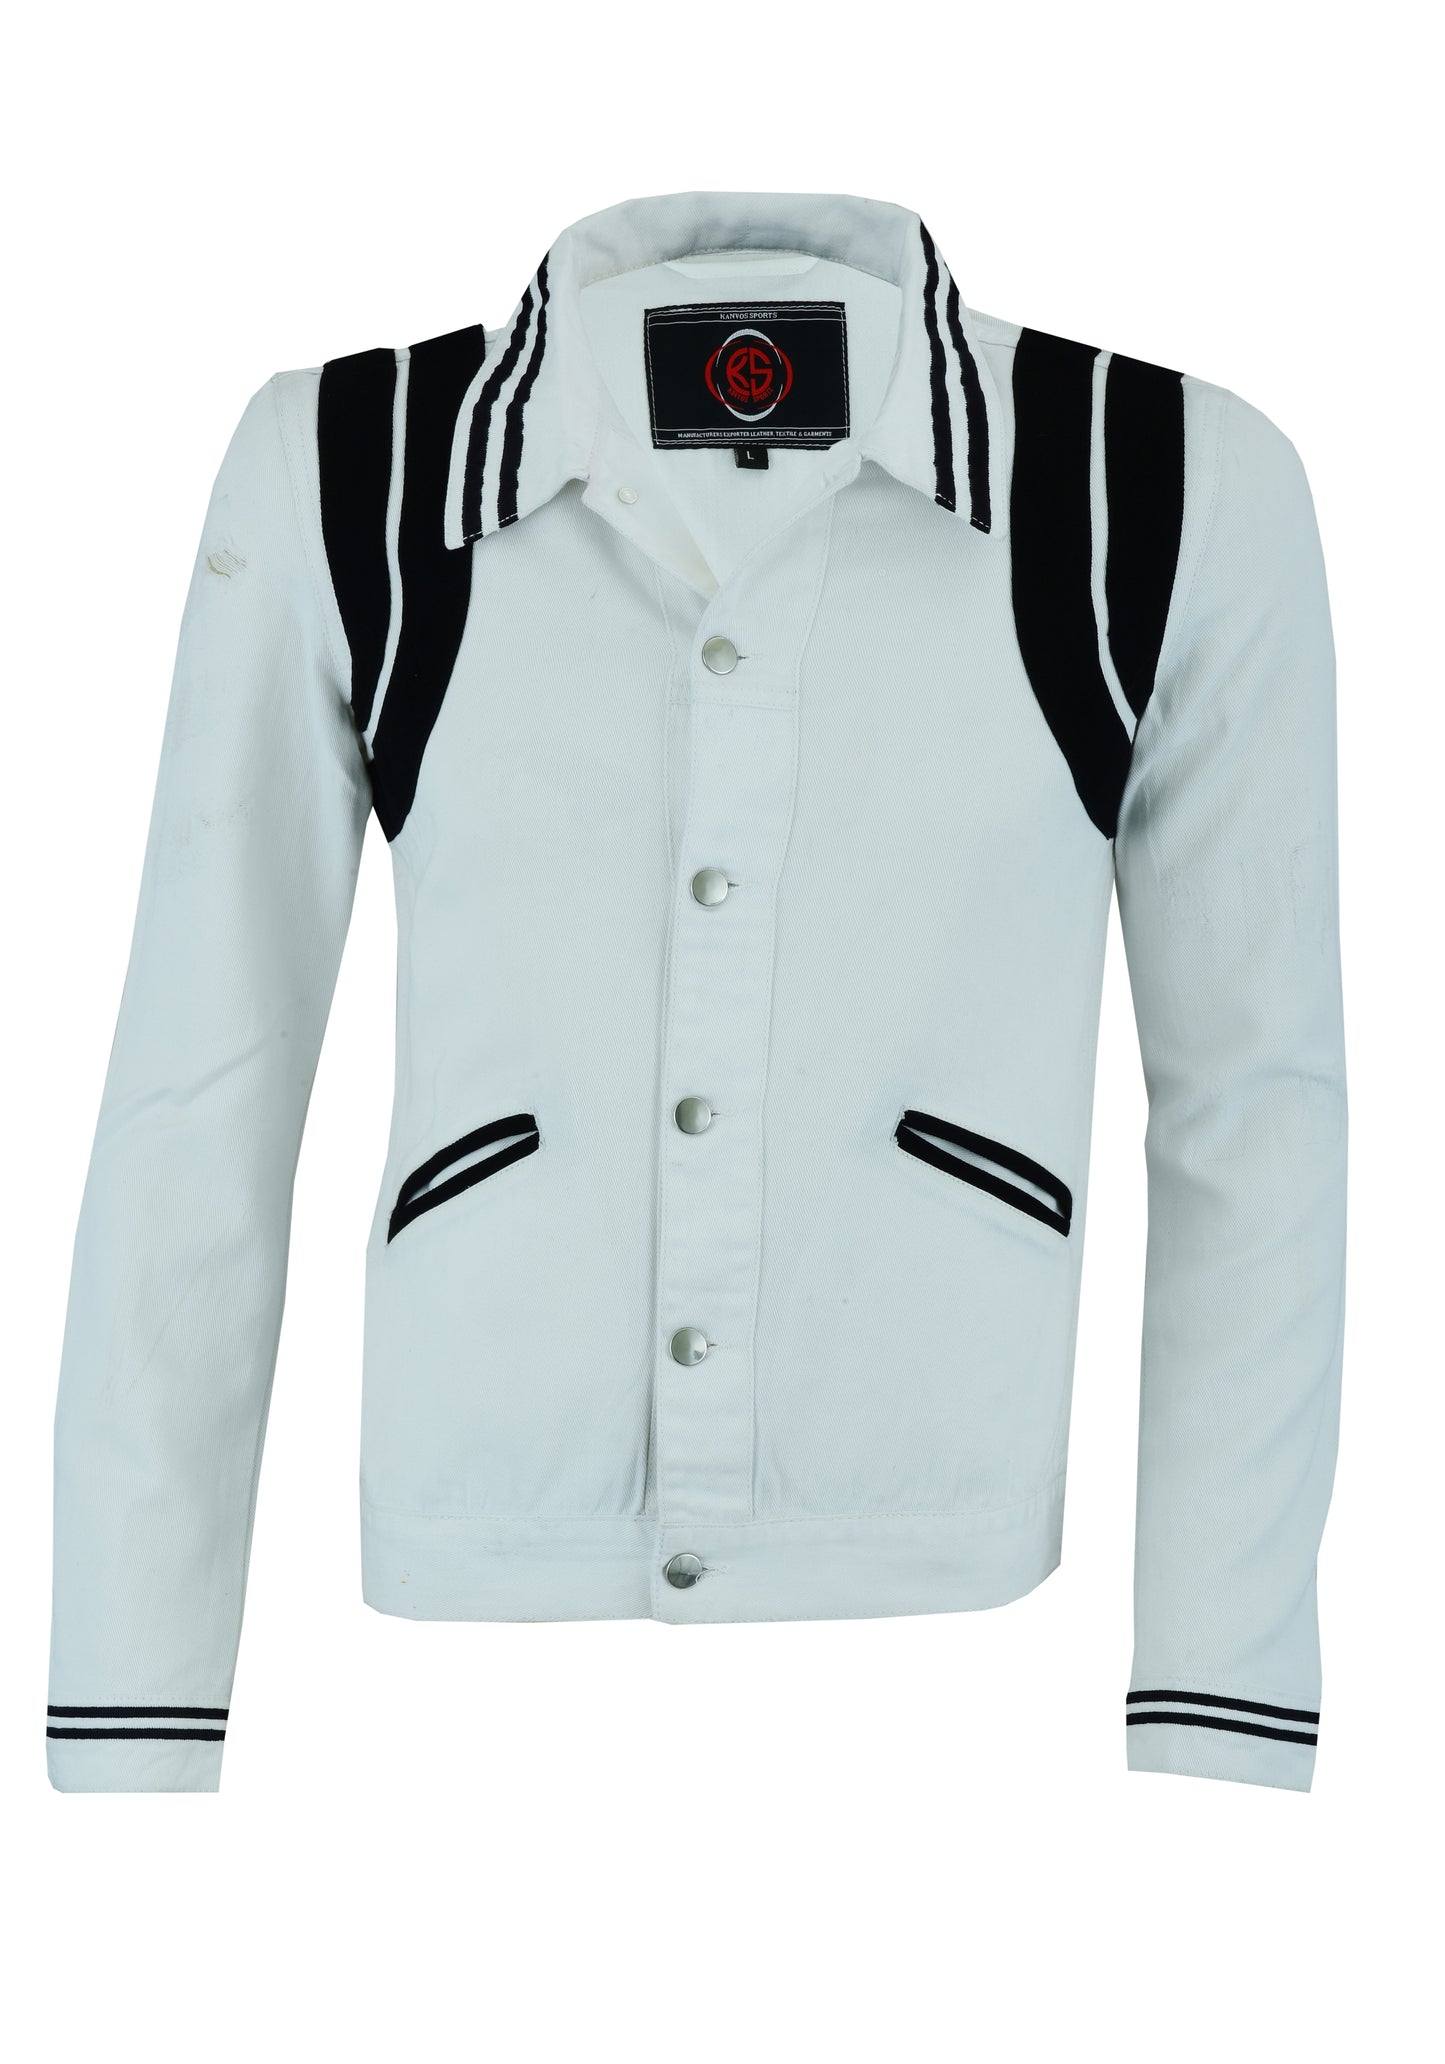 KS106 White & Black Denim Jackets Hip-hop Style  Kanvos Sports